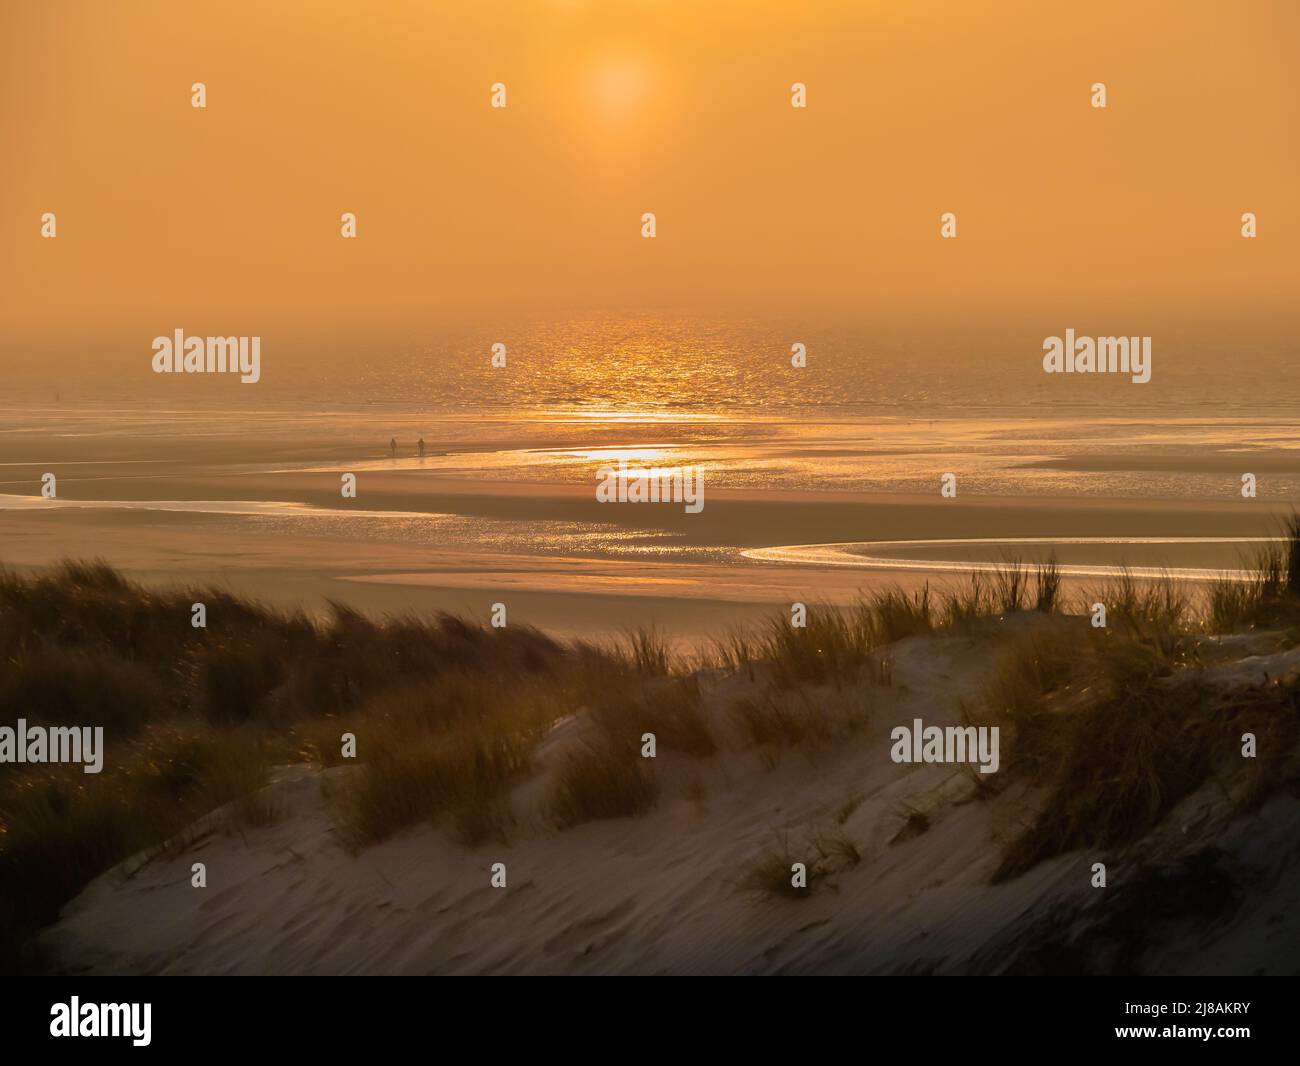 Golden sunset on beach with dunes Stock Photo